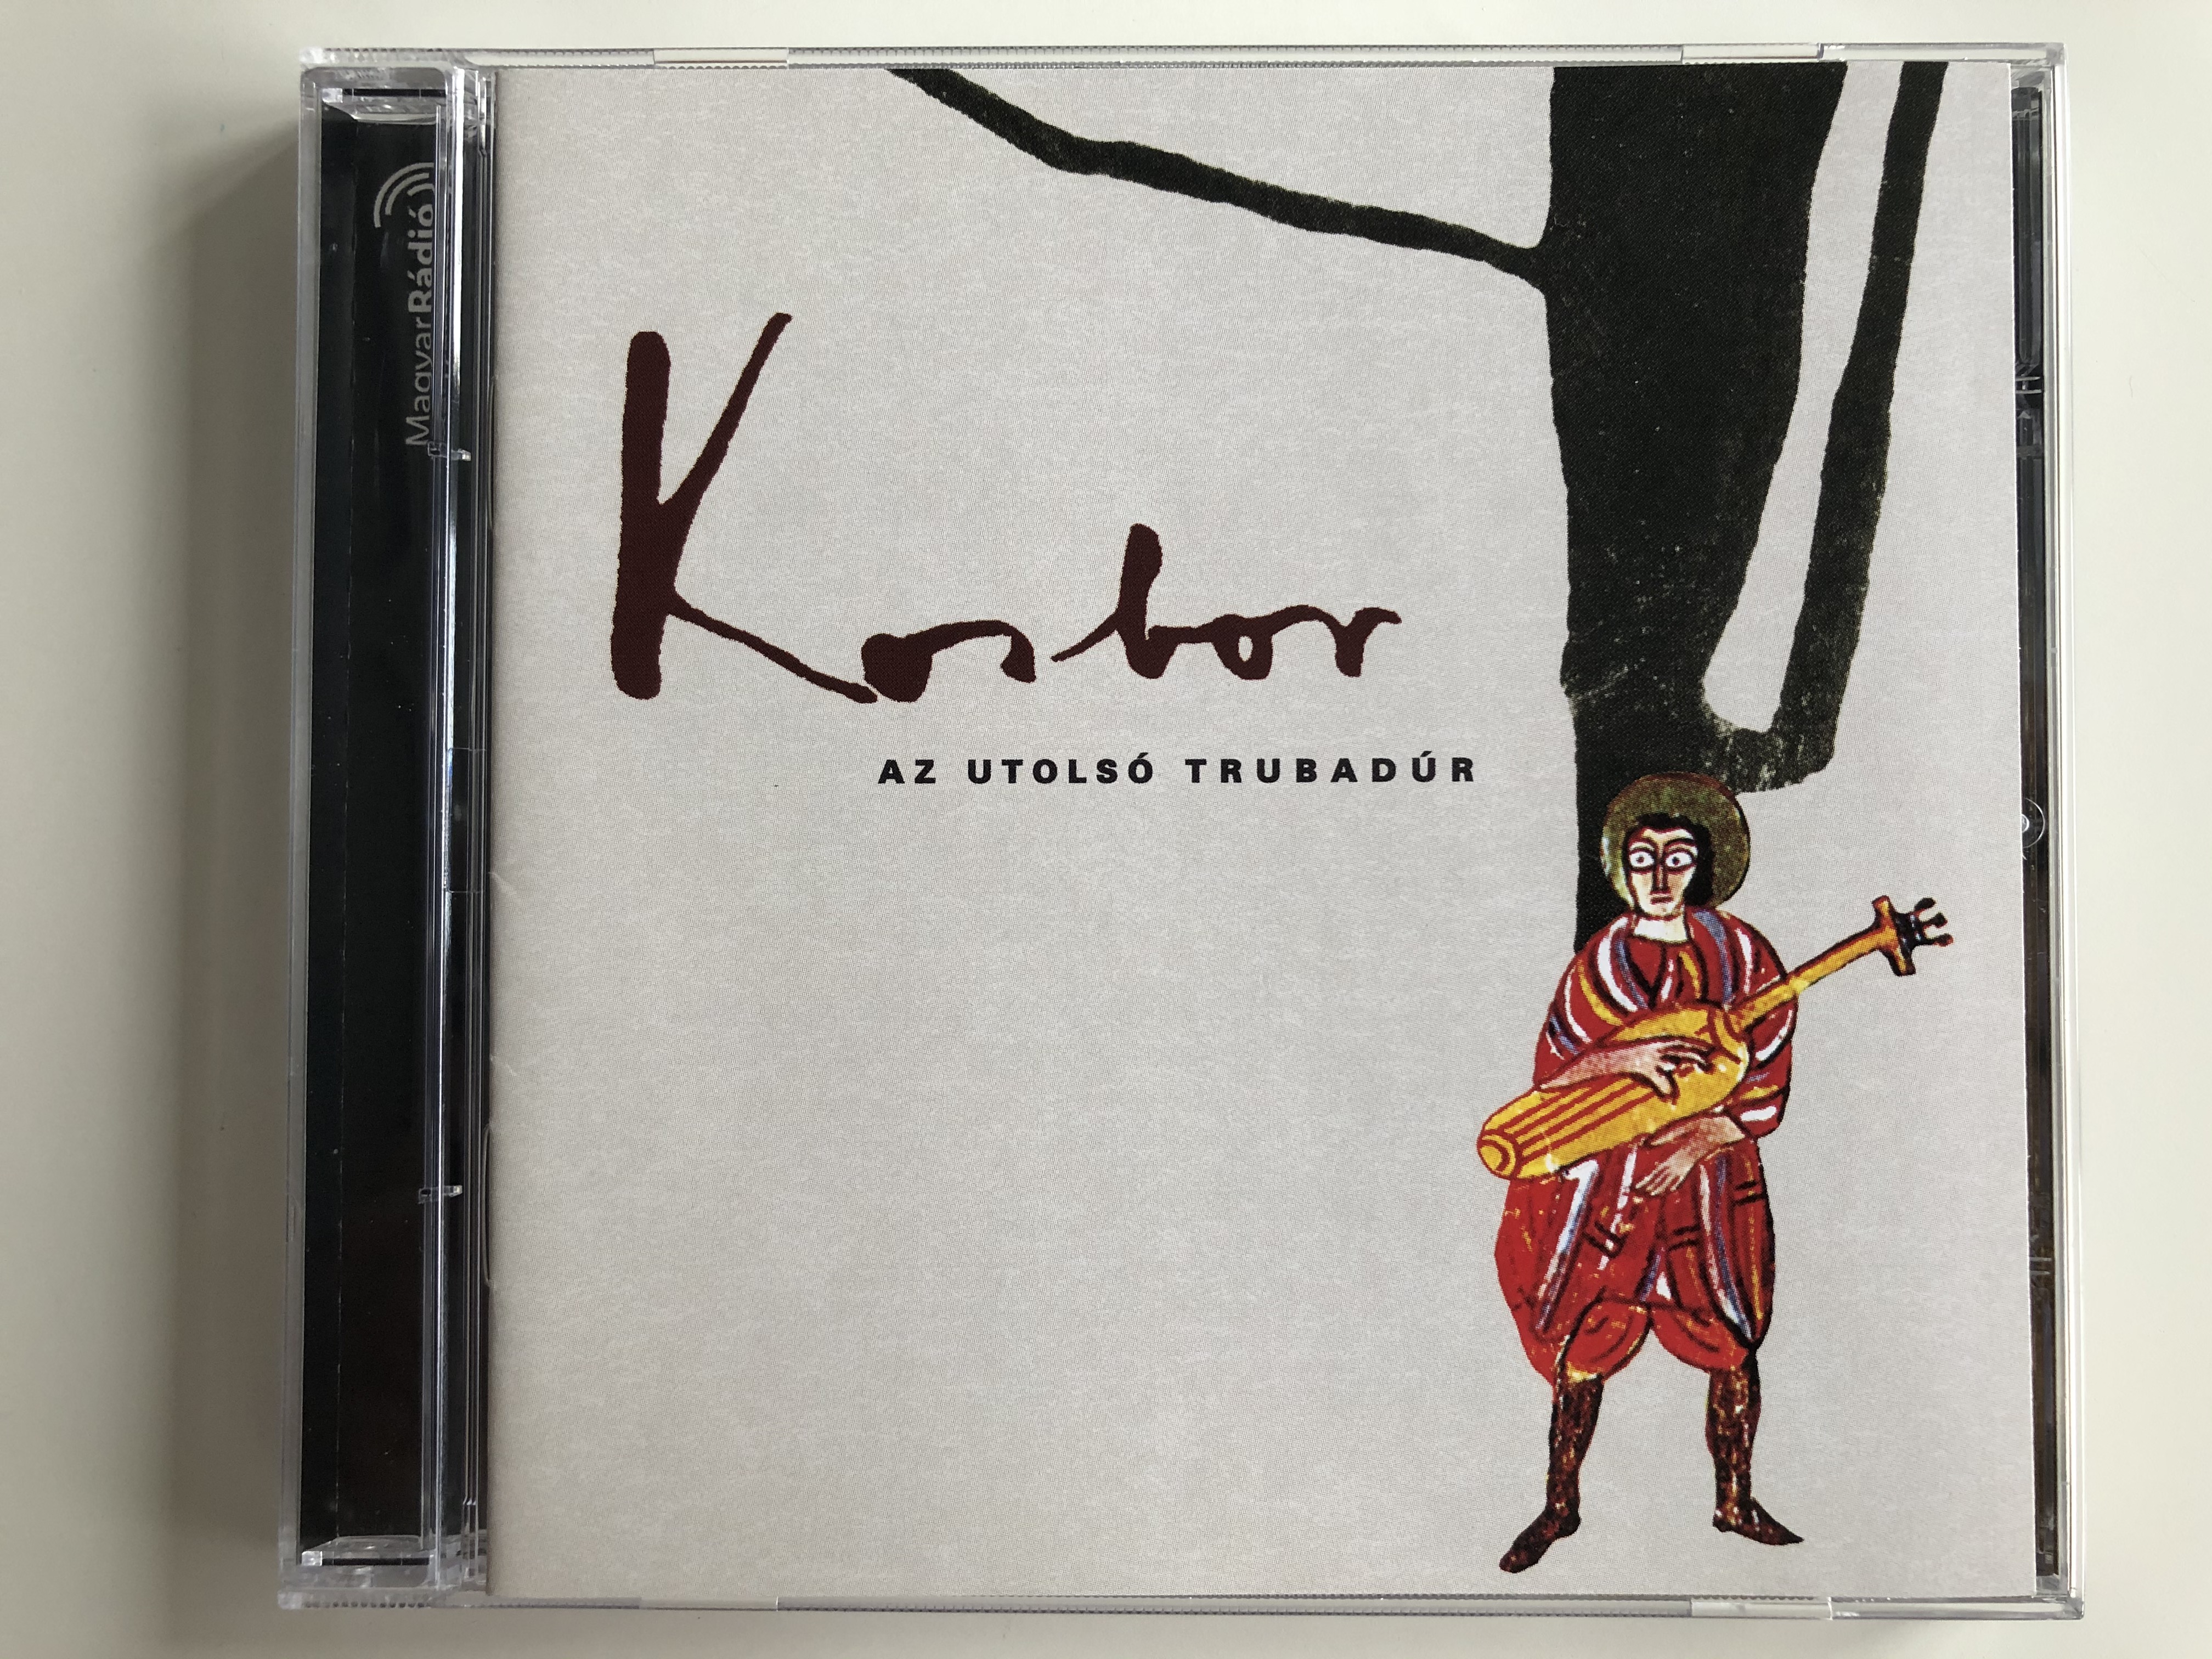 kosbor-az-utols-trubad-r-gryllus-audio-cd-2004-gcd-036-1-.jpg